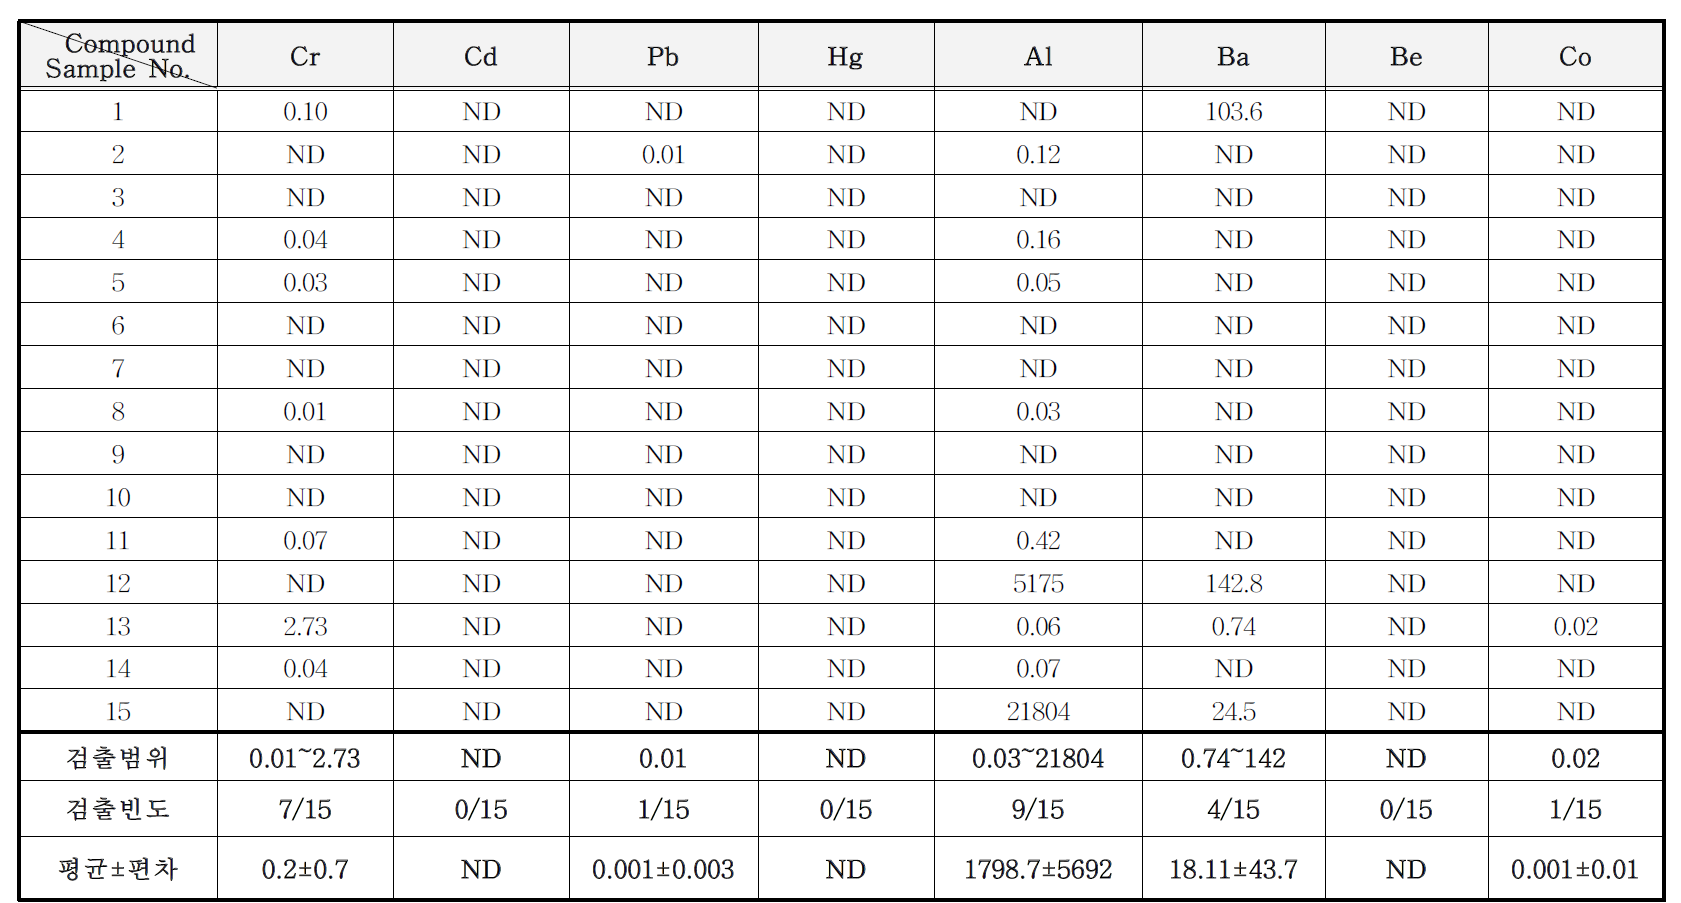 방청제 중 중금속류 분석 결과 (mg/kg)